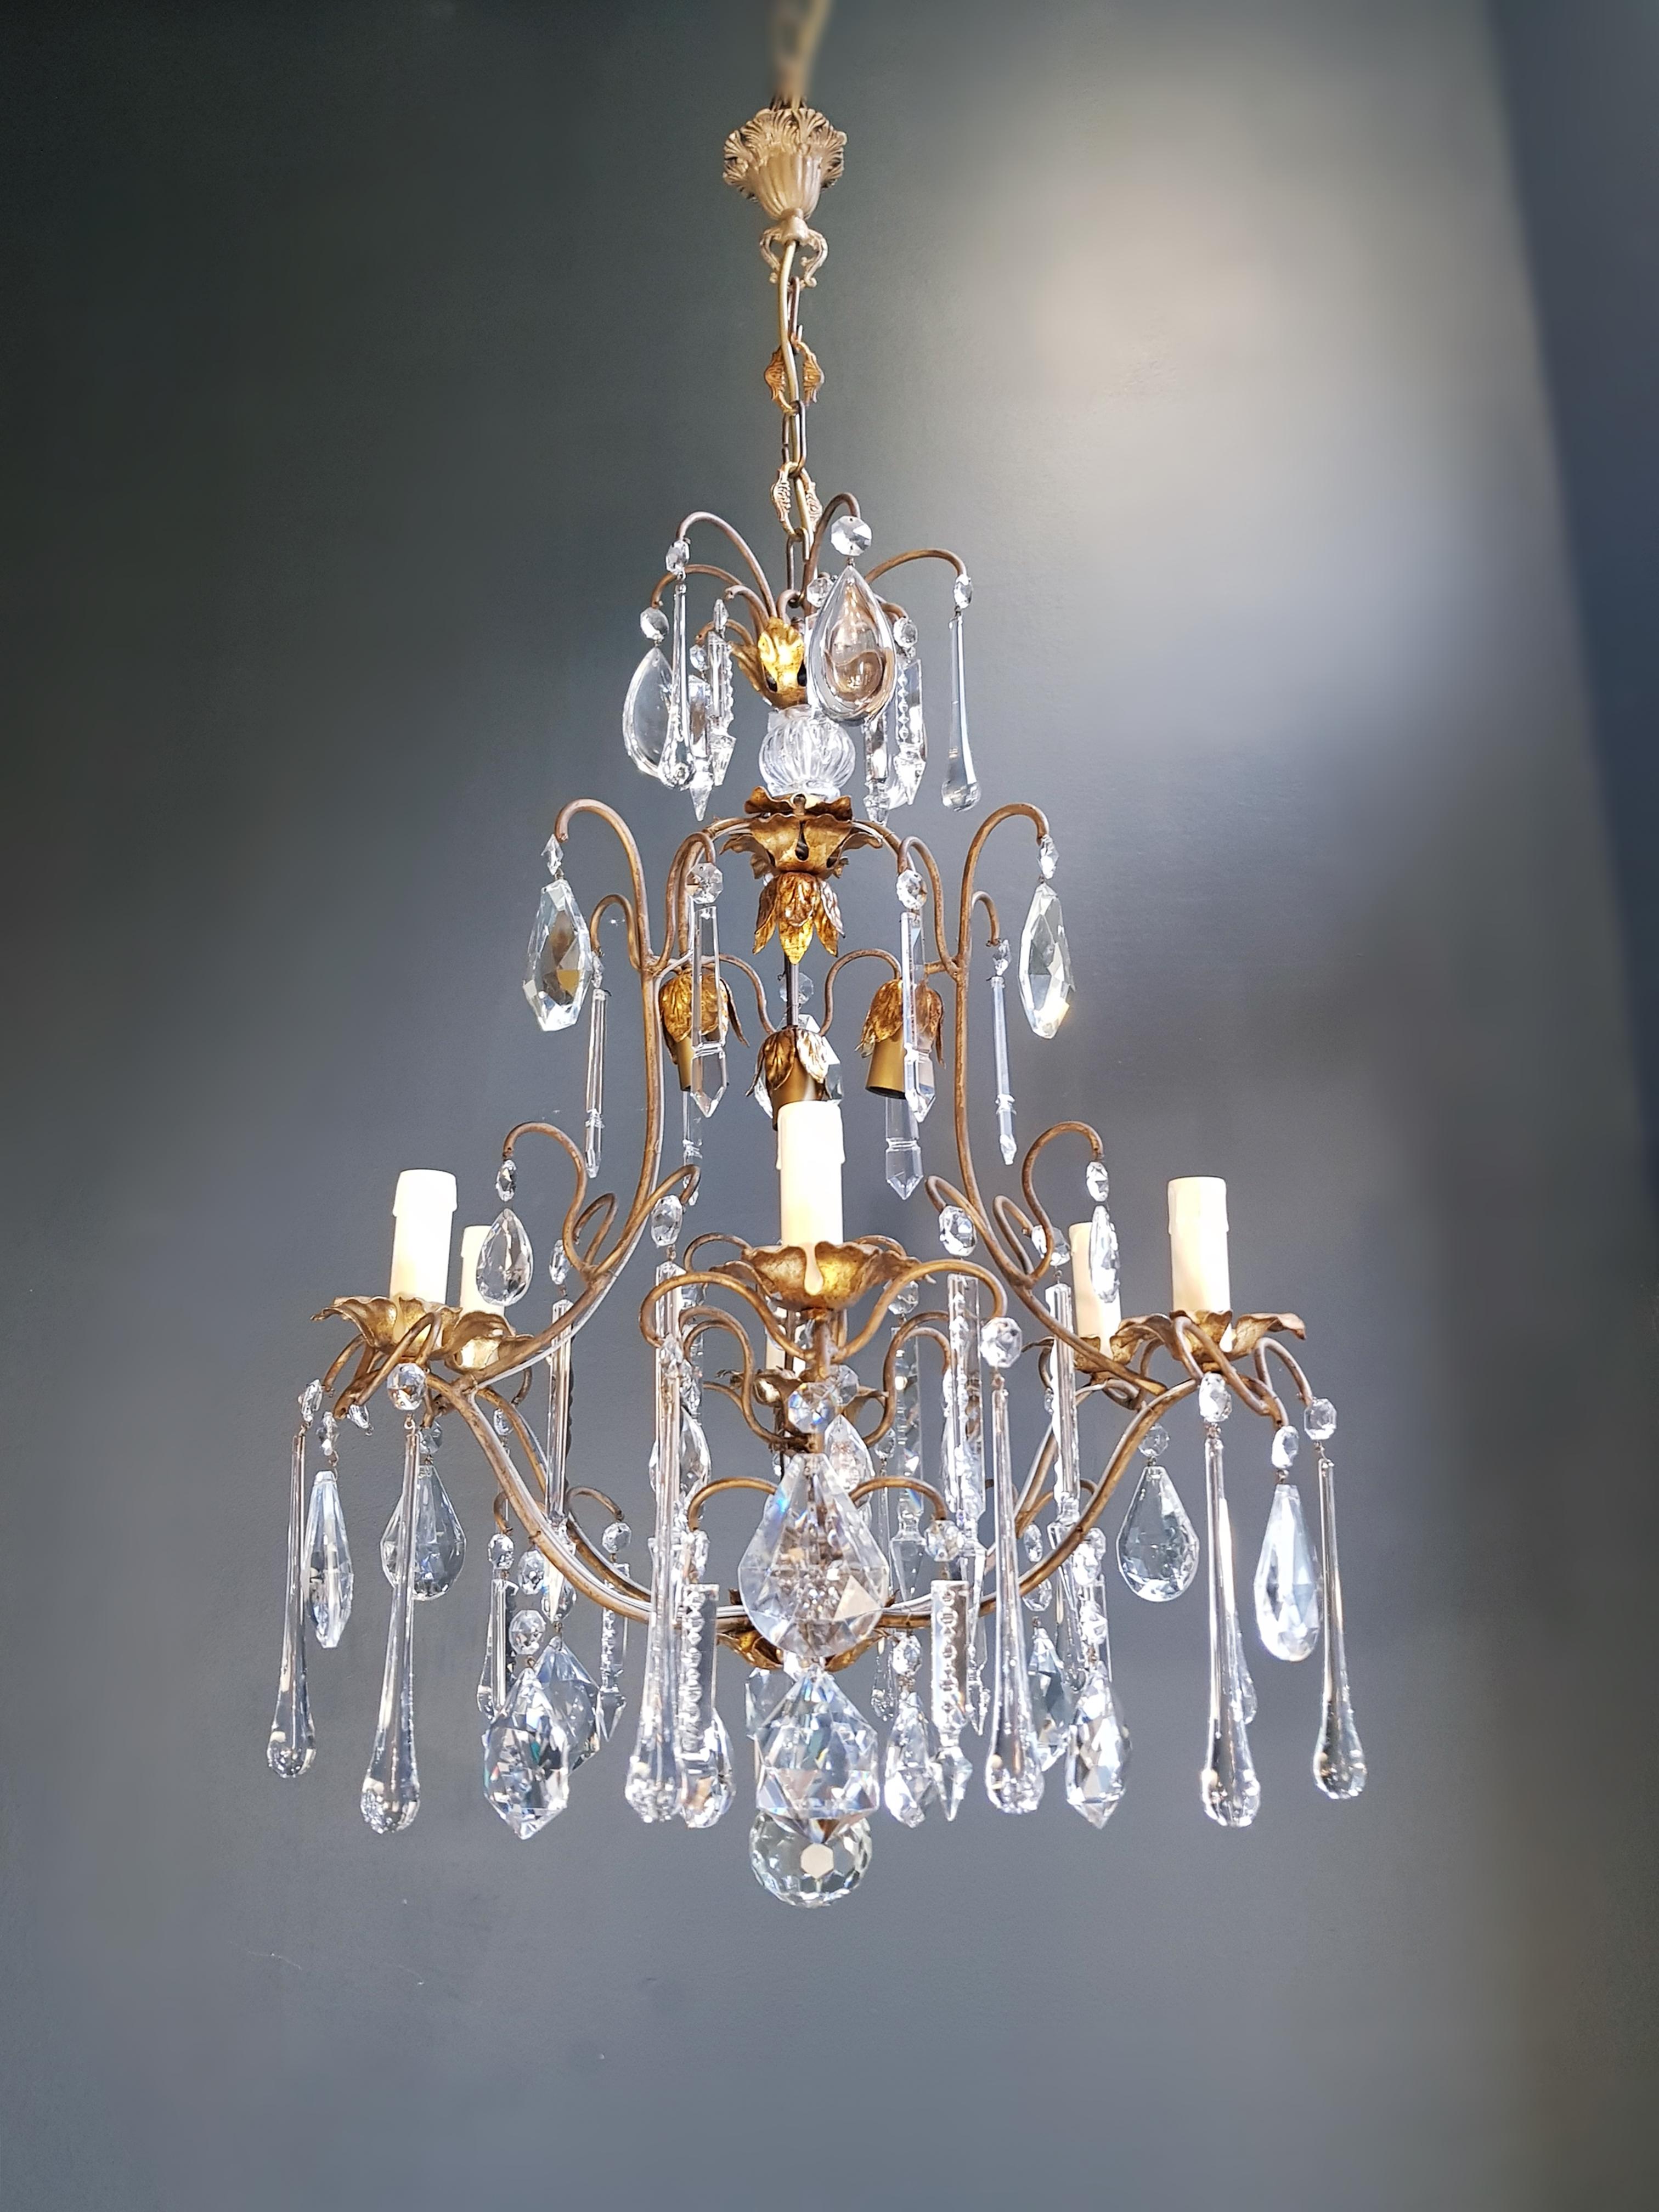 19th Century Candelabrum Chandelier Crystal Ceiling Lamp Antique Art Nouveau Pendant Lighting For Sale